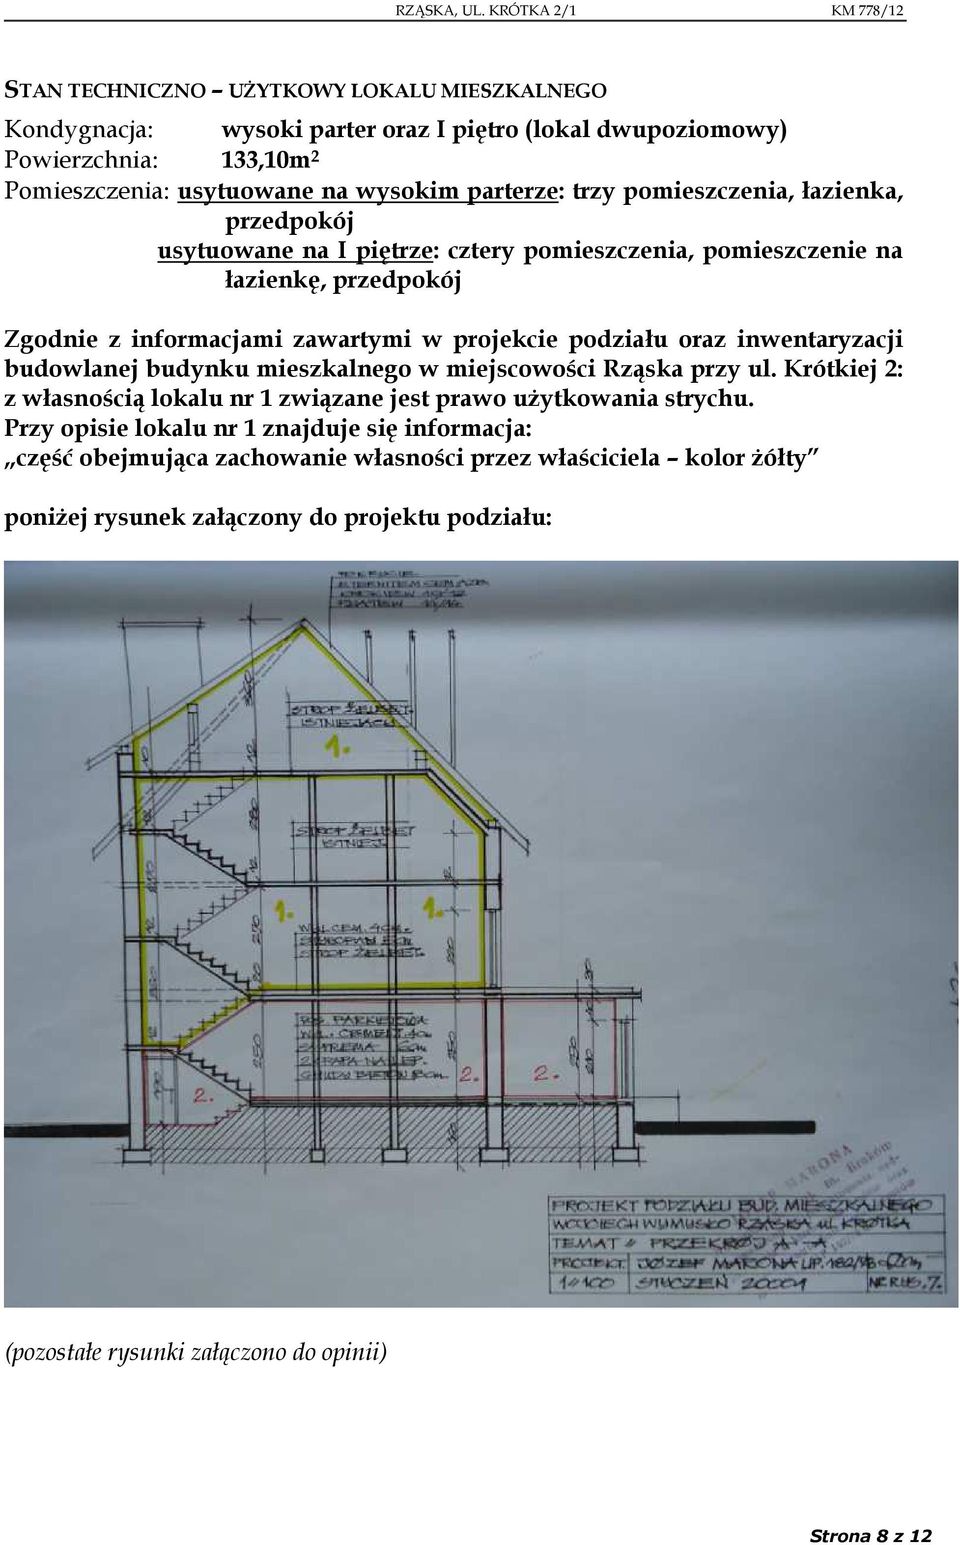 inwentaryzacji budowlanej budynku mieszkalnego w miejscowości Rząska przy ul. Krótkiej 2: z własnością lokalu nr 1 związane jest prawo użytkowania strychu.